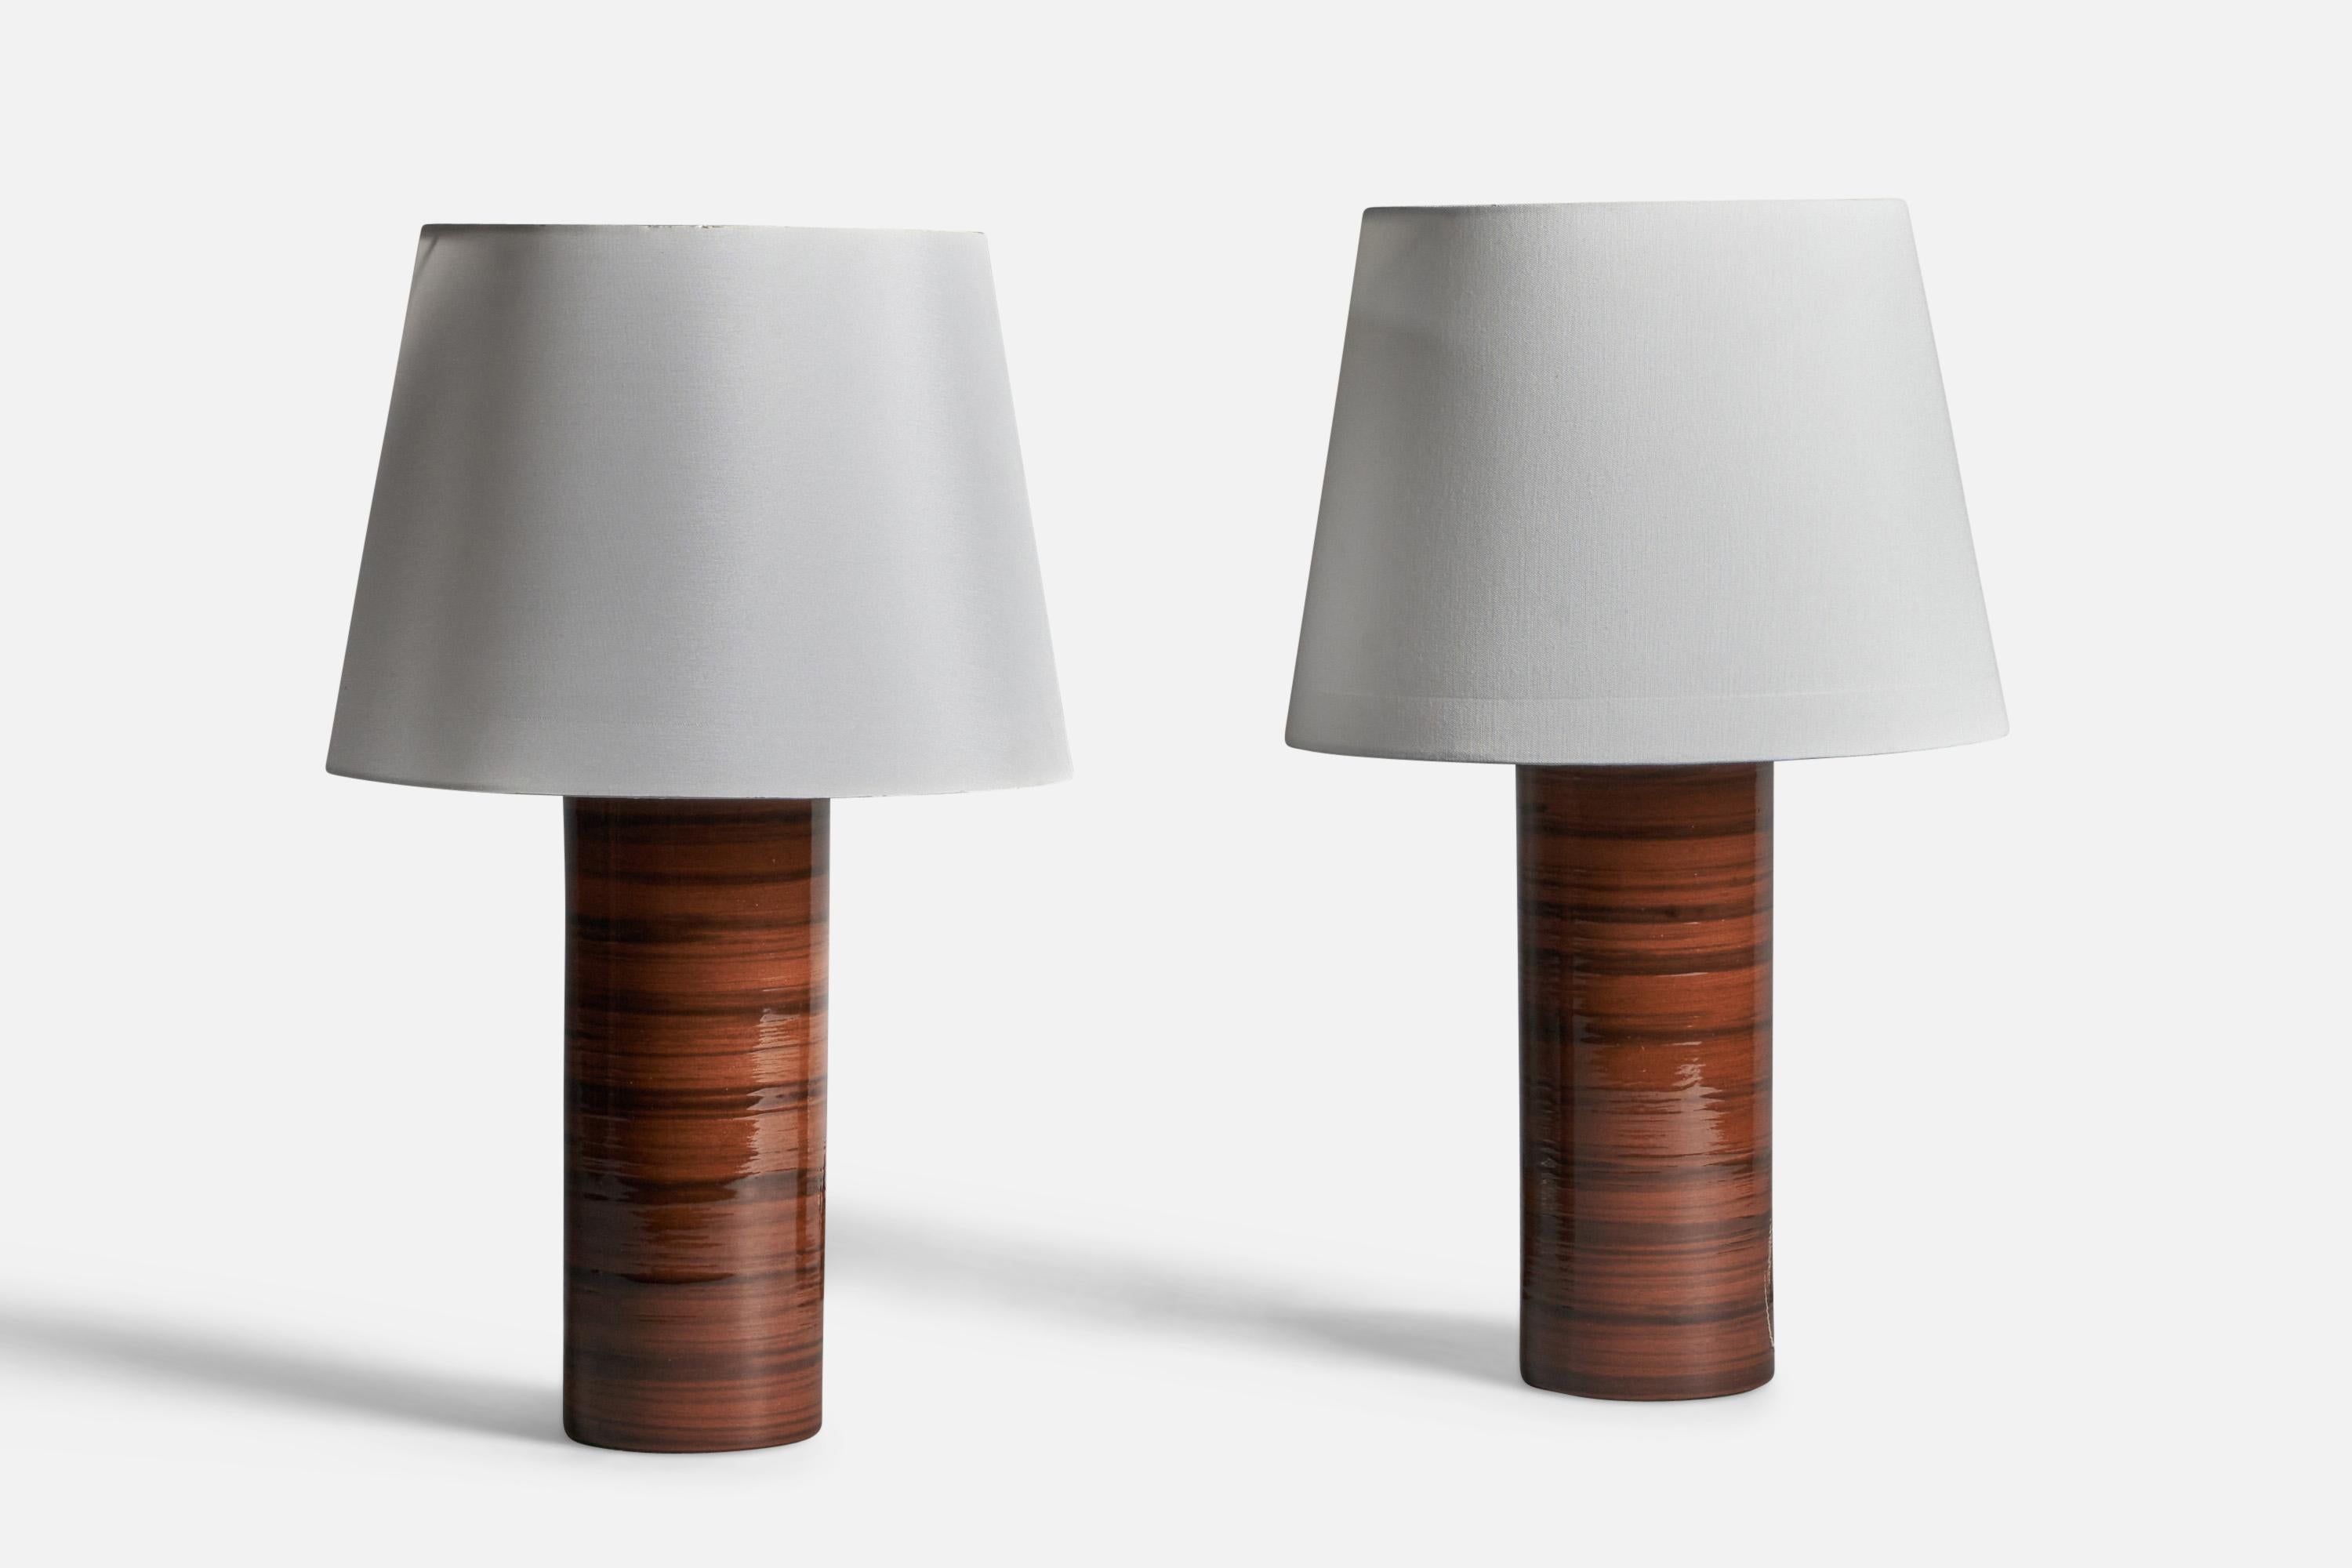 Ein Paar braun und schwarz glasierte Steingut-Tischlampen, entworfen und hergestellt in Schweden, 1960er Jahre.

Abmessungen der Lampe (Zoll): 14,5